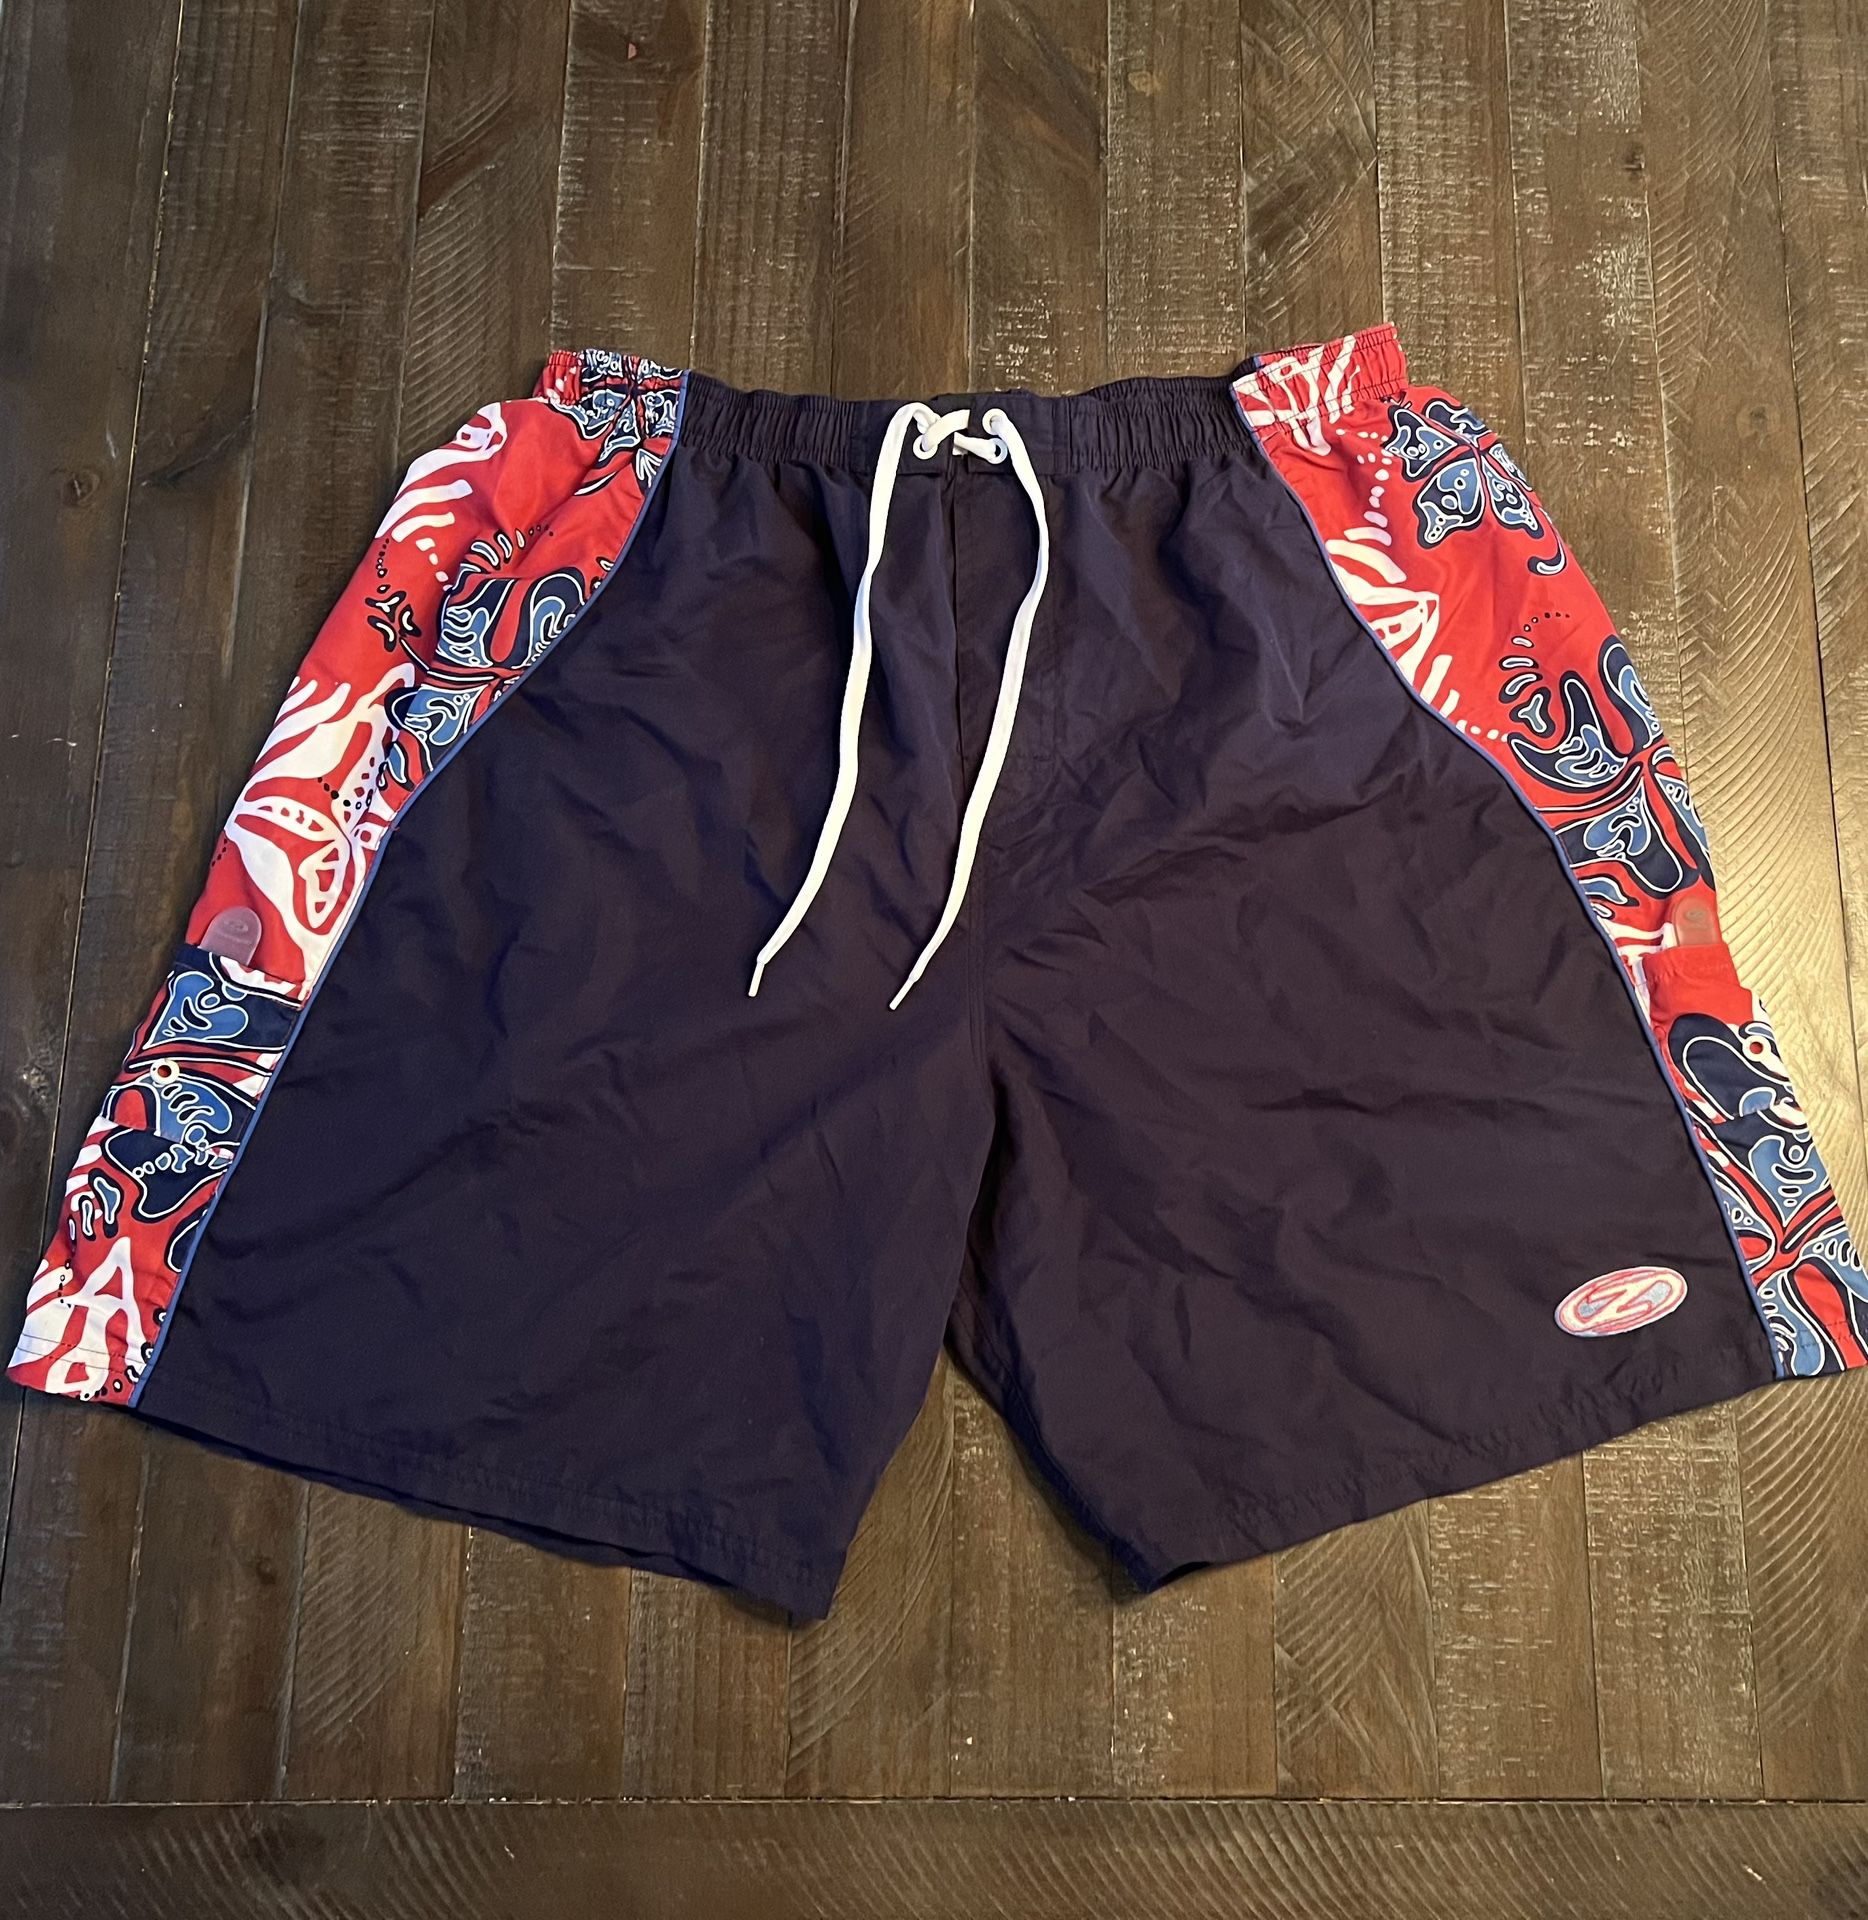 Jimmy Z Swim Shorts Mens XXL Swim Trunks With Pockets Vintage Retro